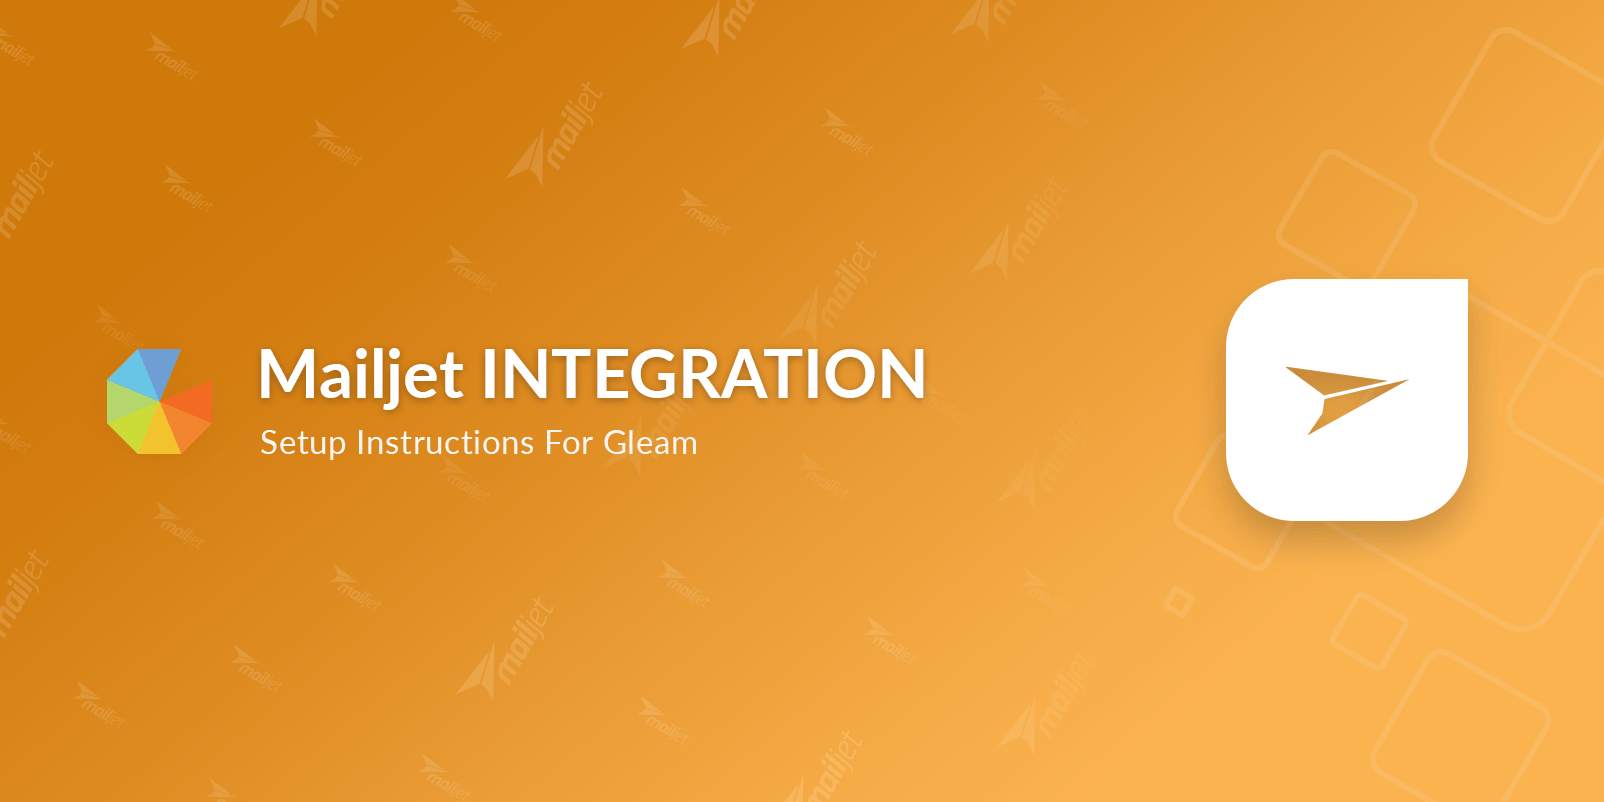 Mailjet integration setup instructions for Gleam